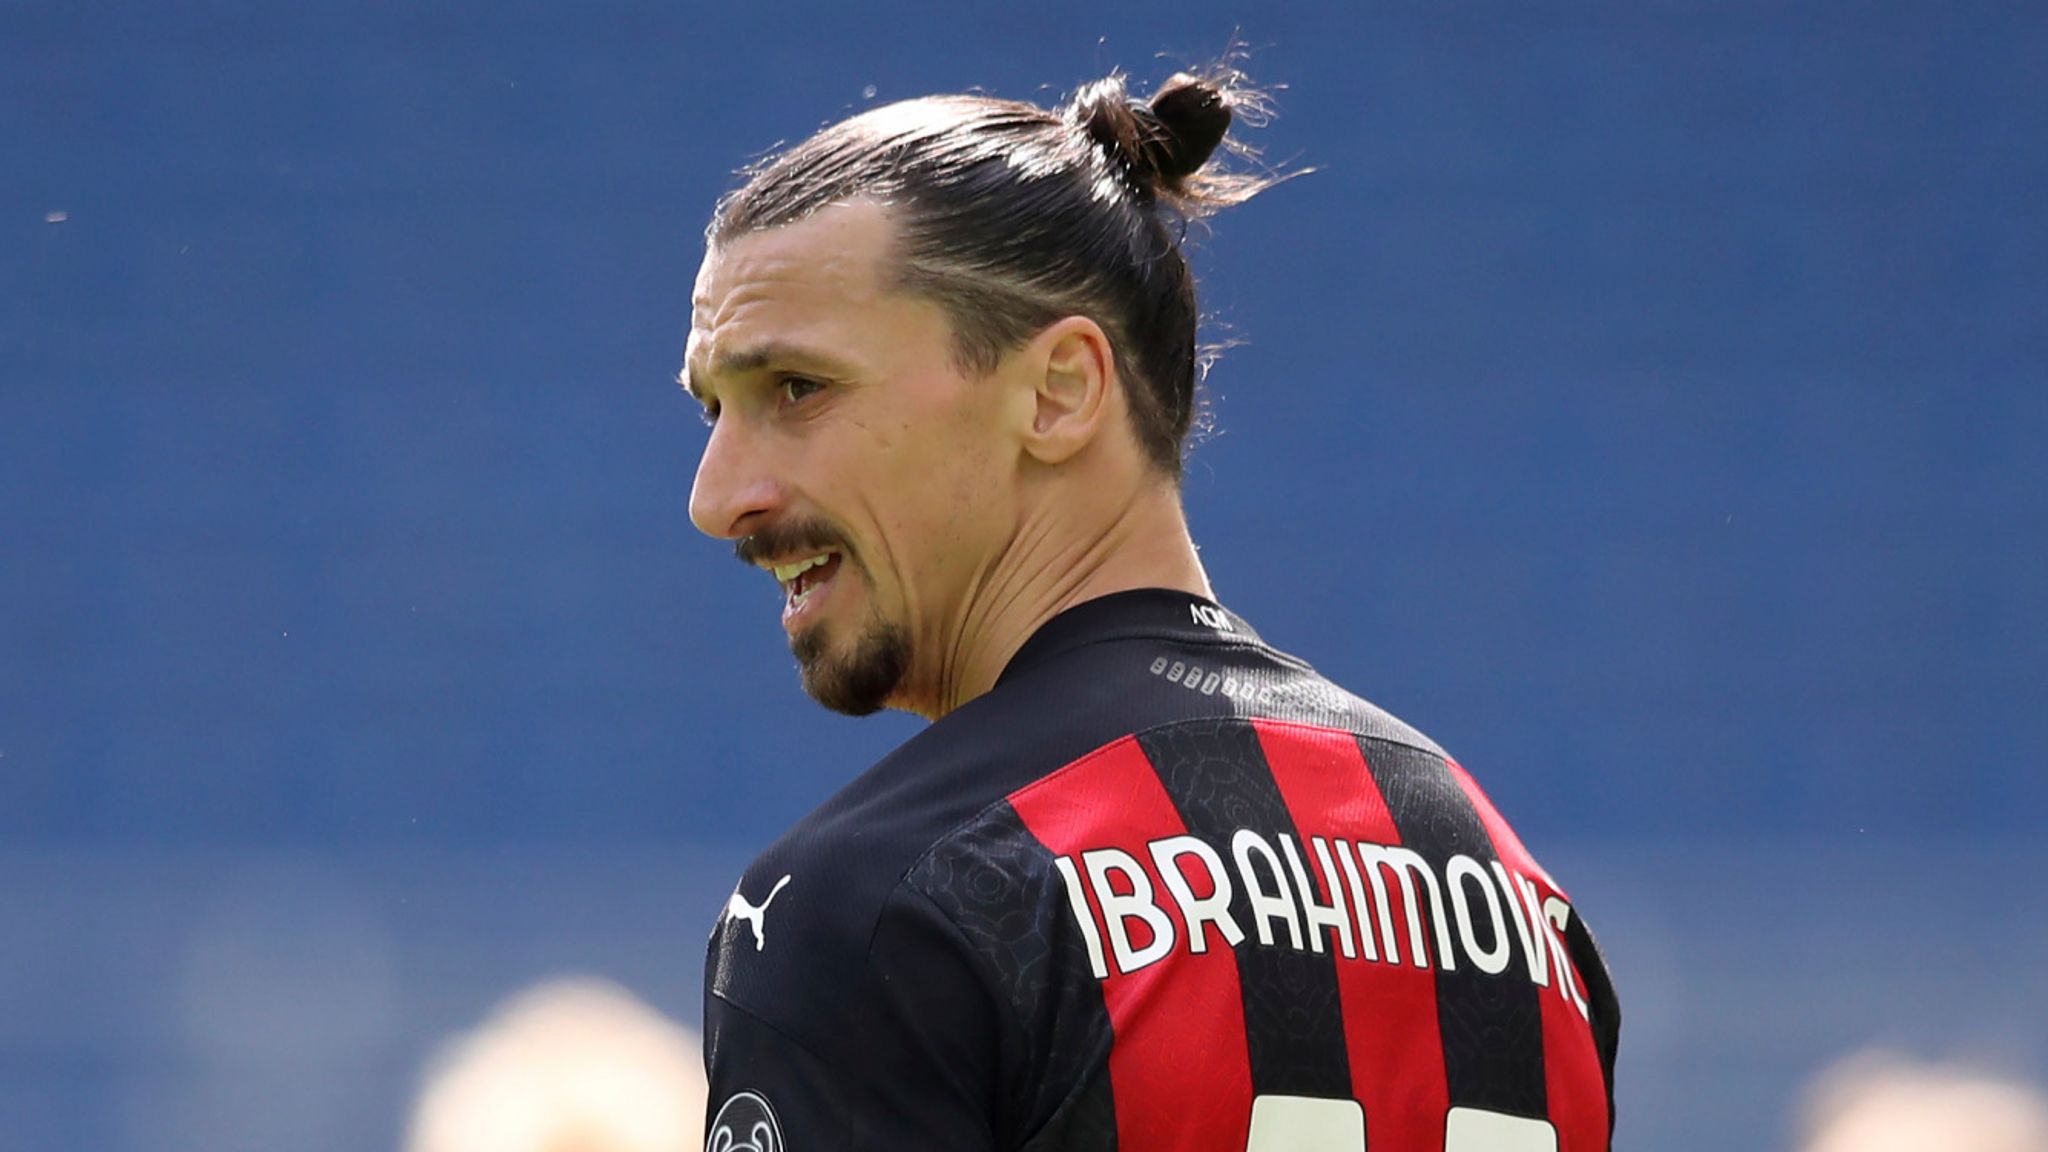 Ibrahimovic gặp chấn thương và chuẩn bị giải nghệ? AC Milan phải đối mặt với cuộc gọi lớn về việc gia hạn hợp đồng